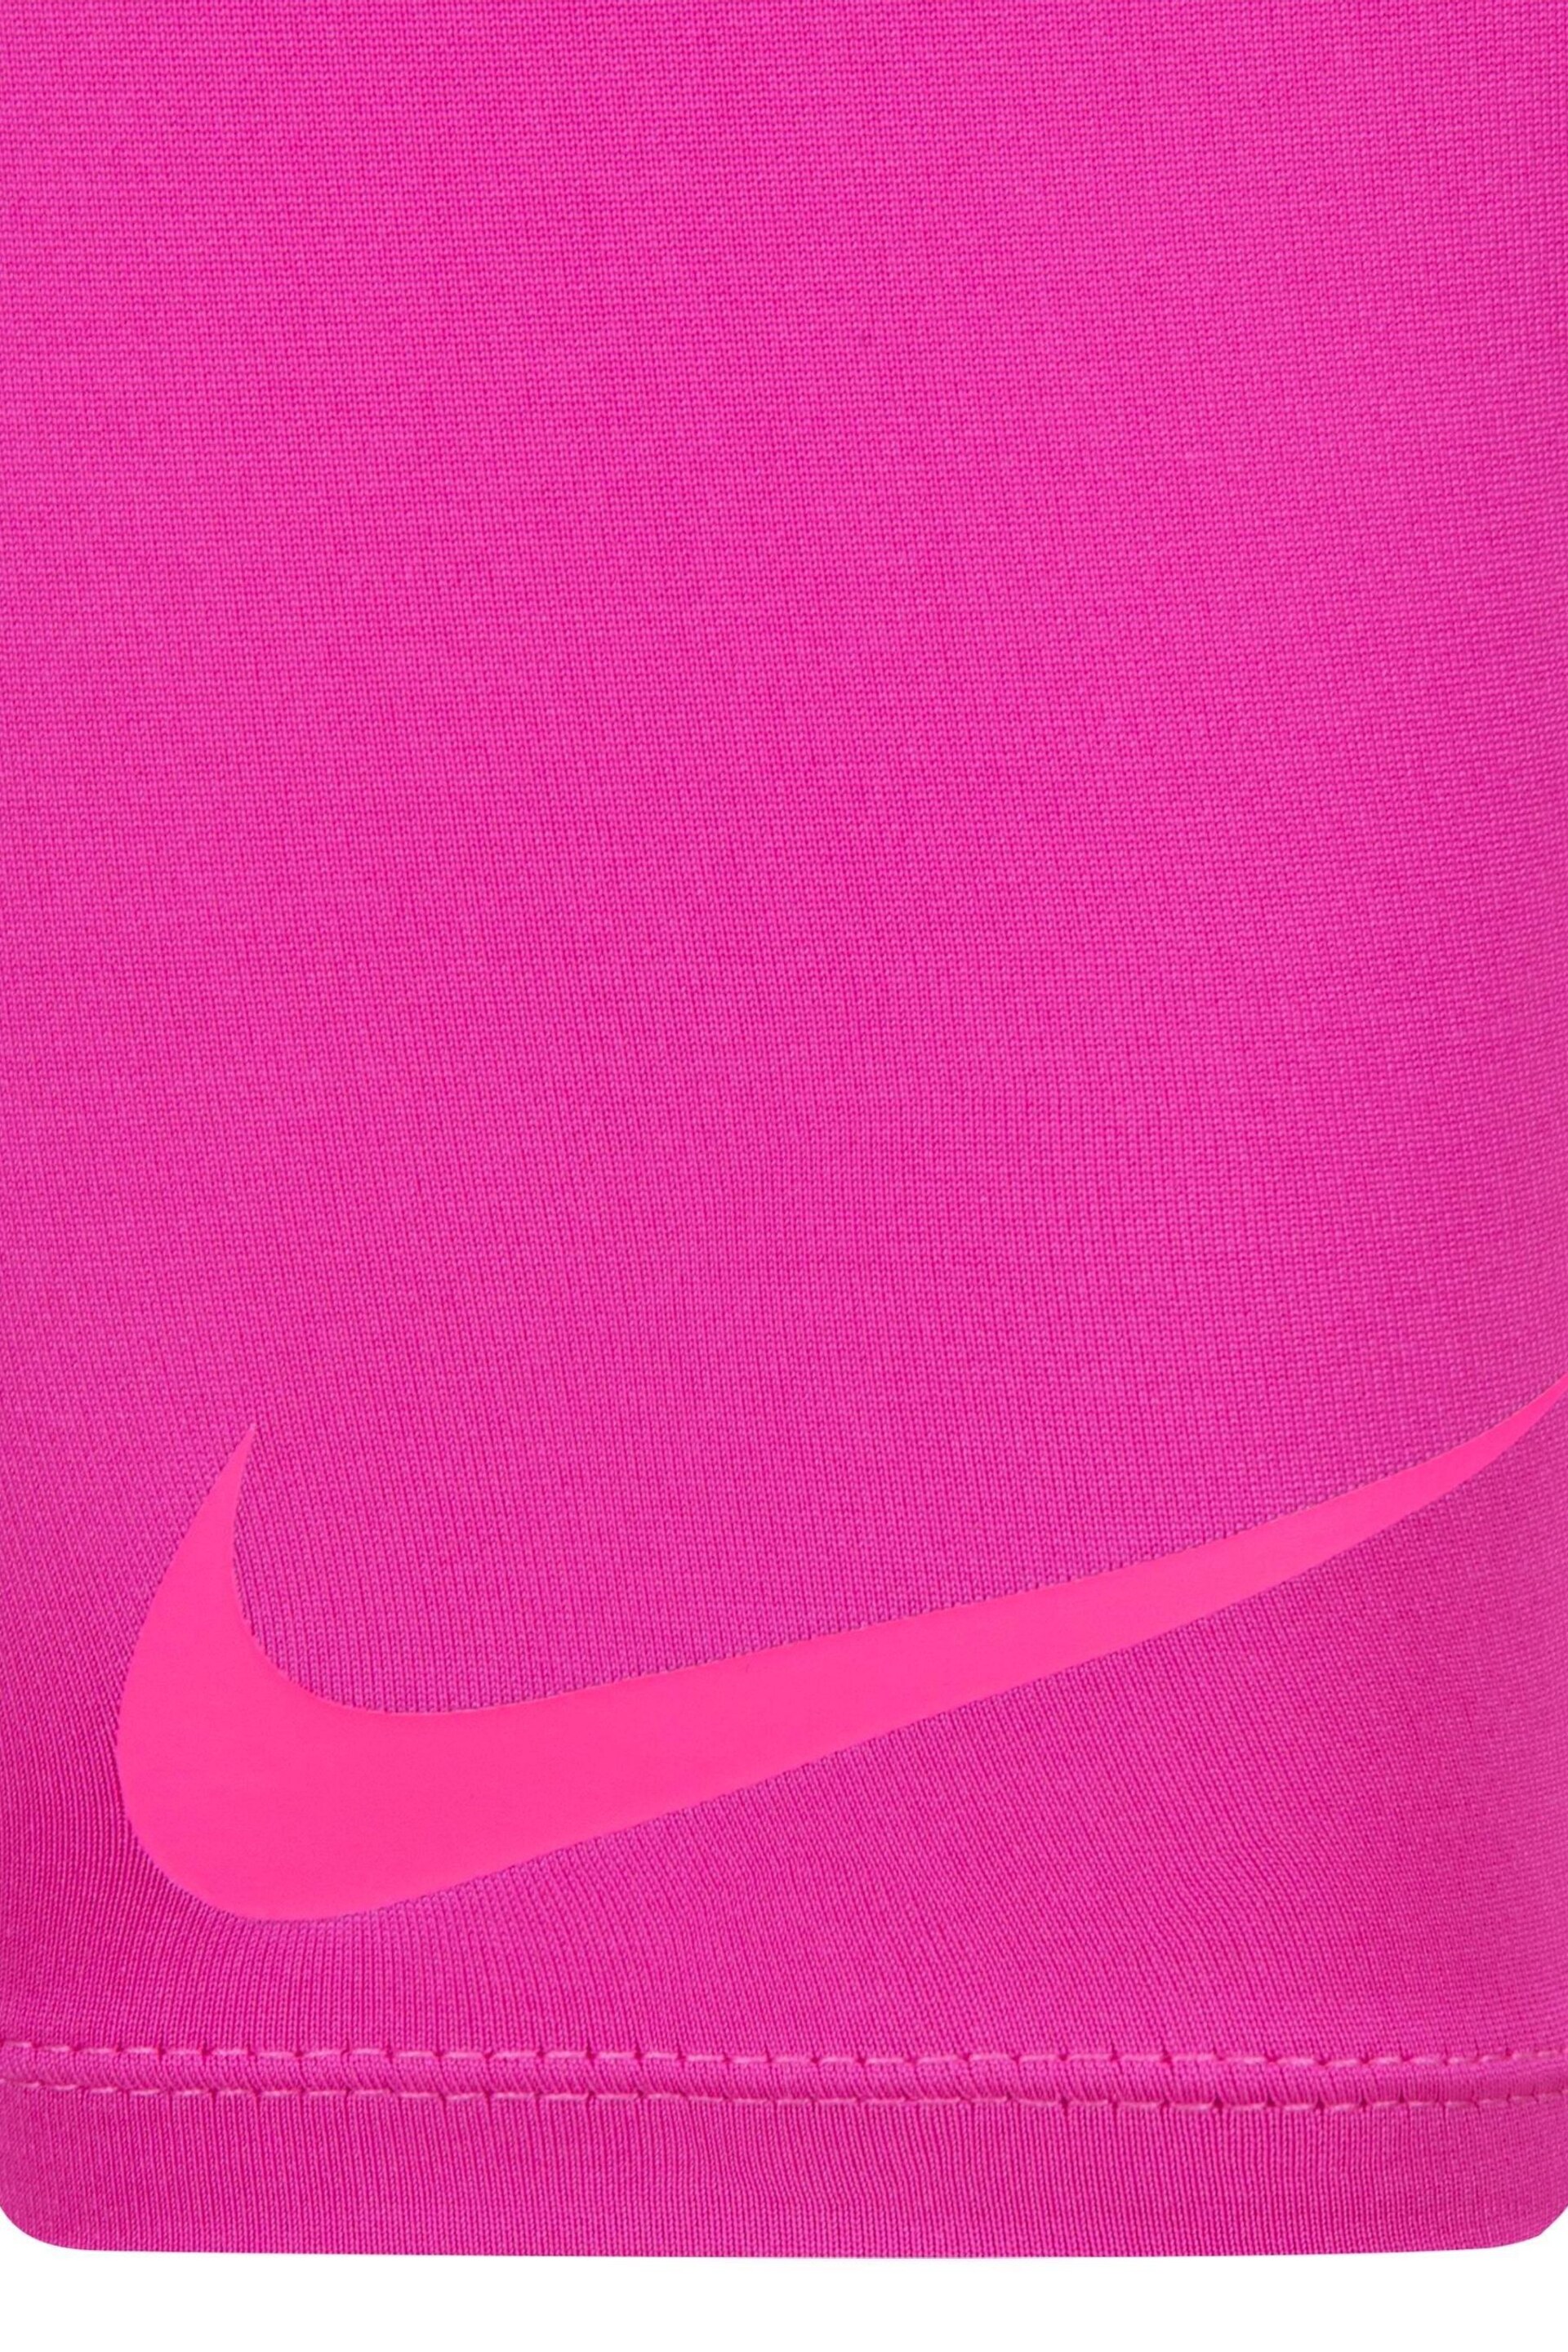 Nike Pink Little Kids Veneer Vest and Shorts Set - Image 3 of 7